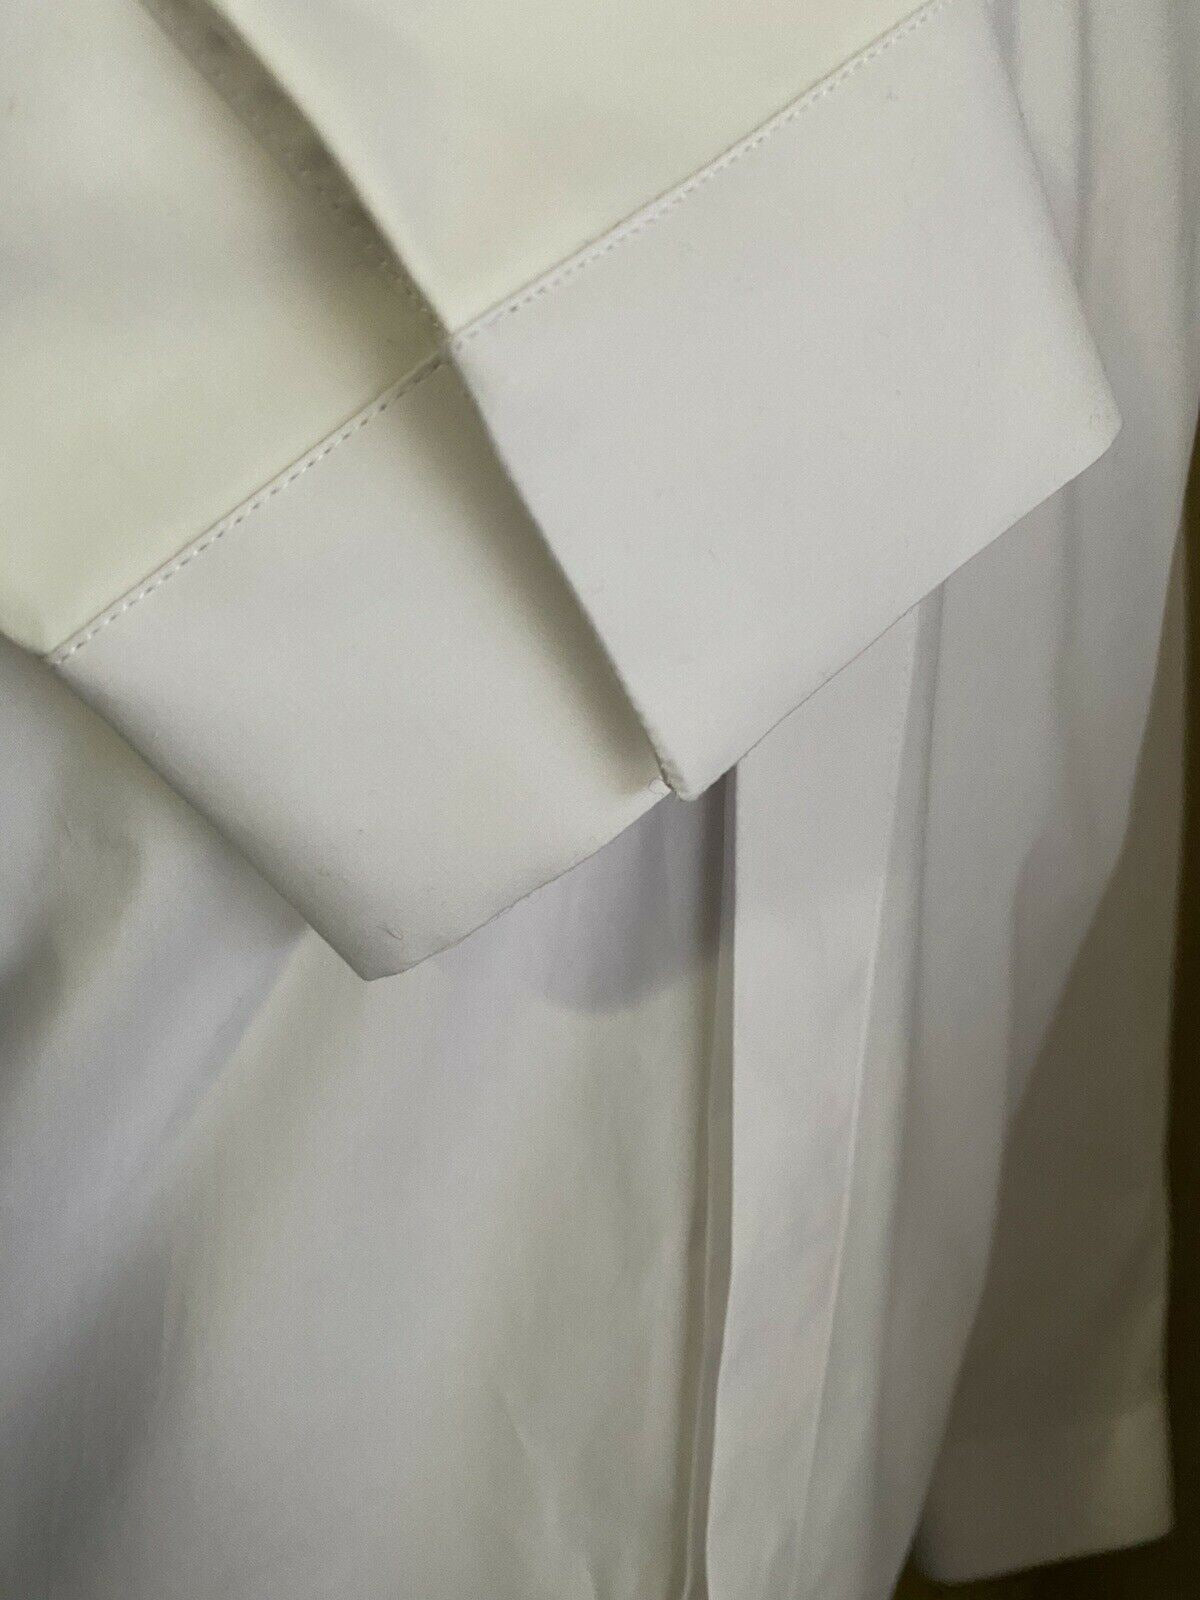 NWT $890 Bottega Veneta Mens Dress Shirt White 40/15.5 Italy